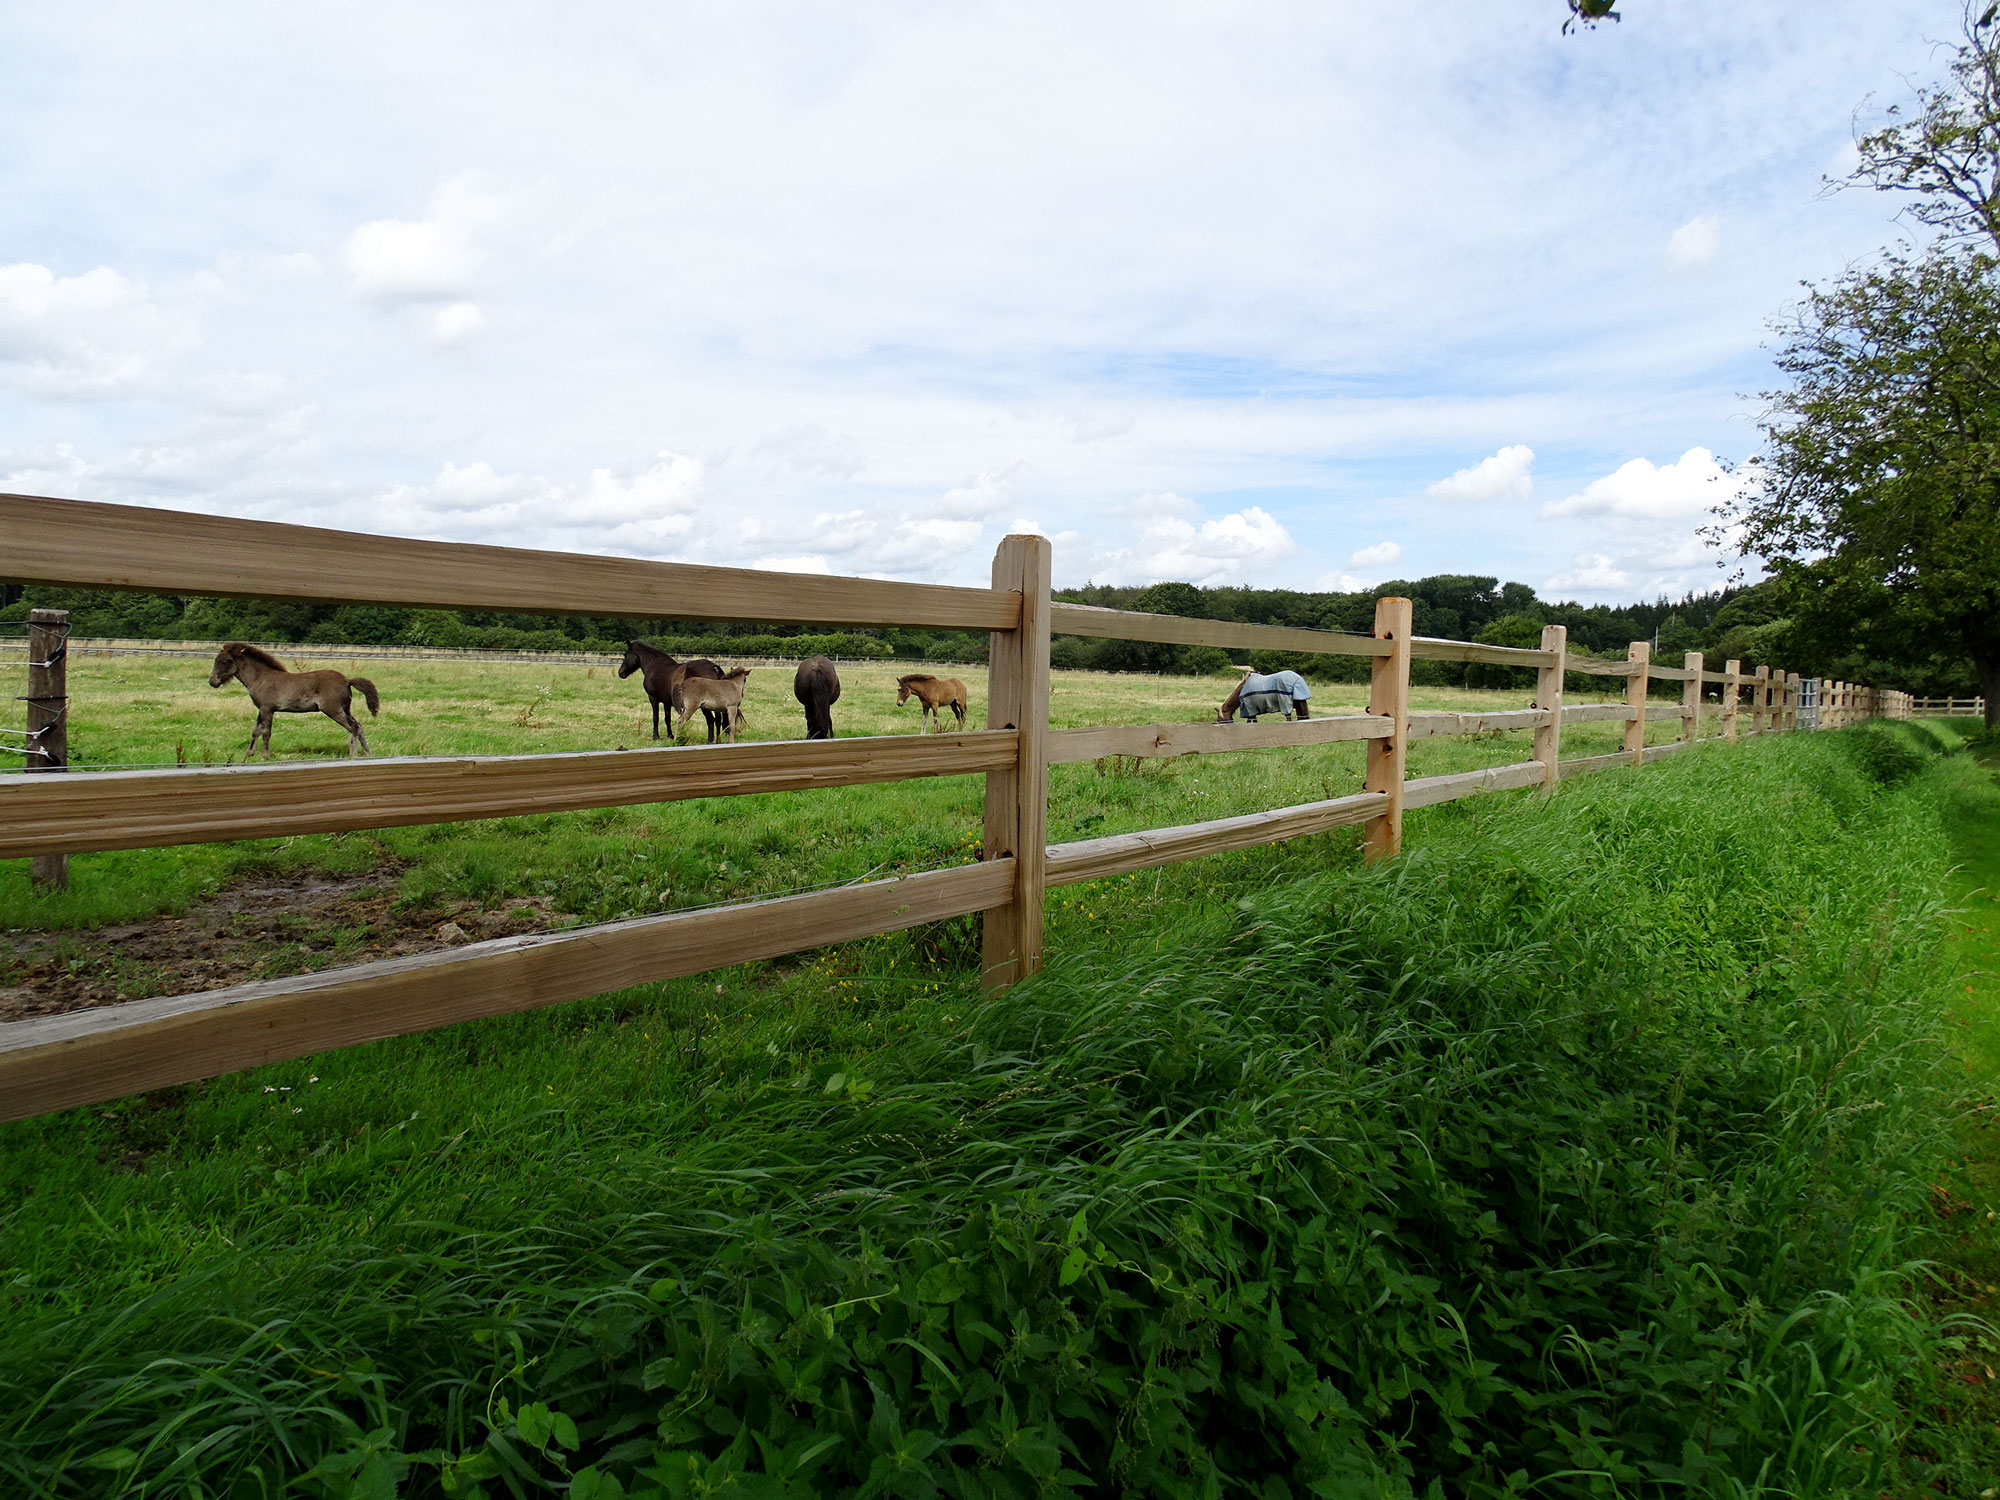 Mellem lægterne på et rustikt hestehegn kan flere heste og føl ses græsse i en hestefold.